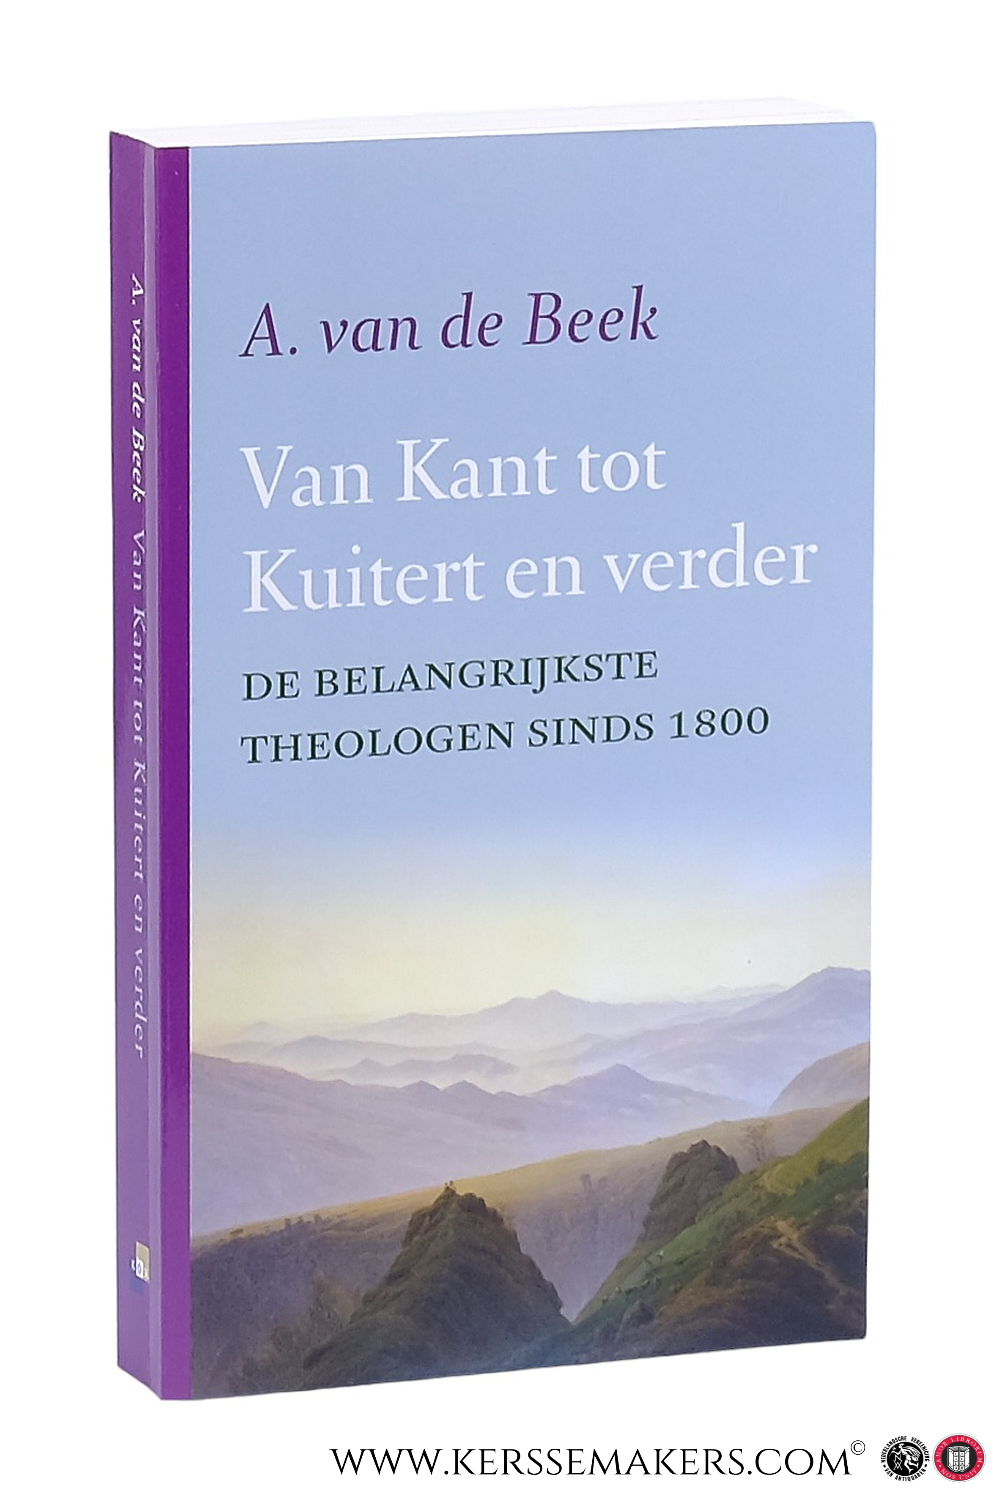 Van Kant tot Kuitert en verder. De belangrijkste theologen sinds 1800. - Beek, A. van de.